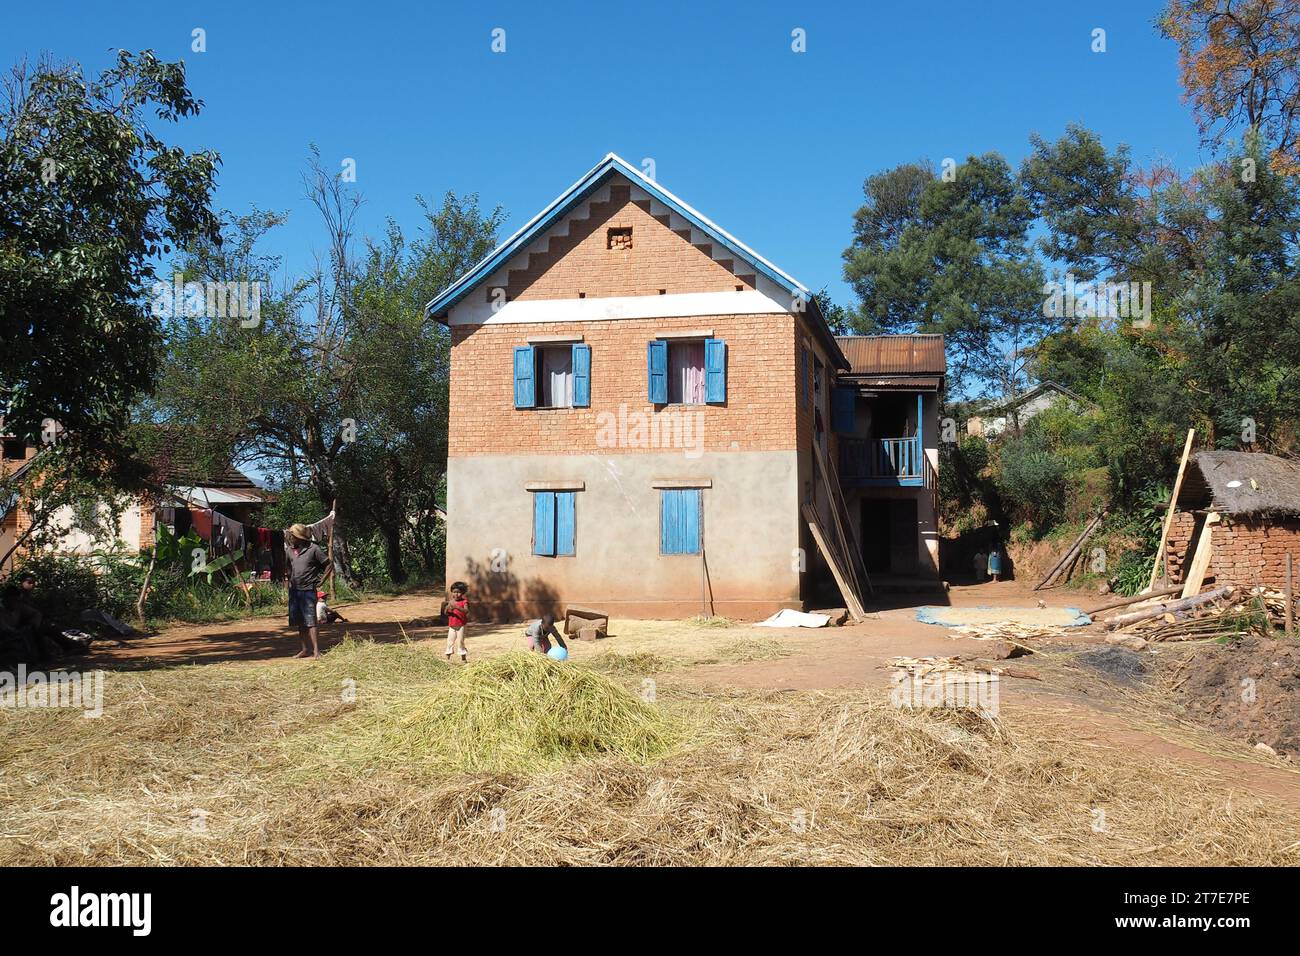 Madagascar, Antsirabe, Village sur la RN7, maison traditionnelle et séchage du riz Foto Stock